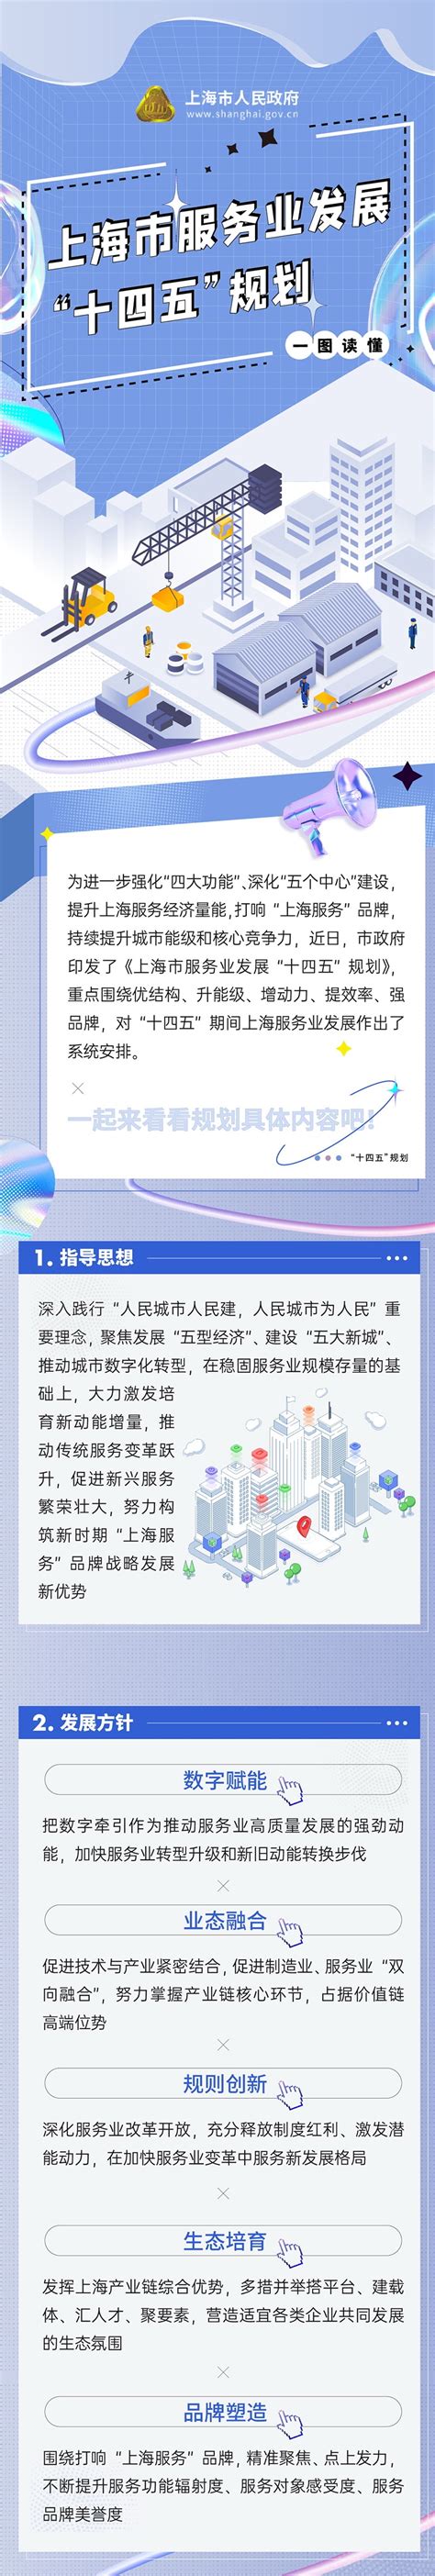 一图读懂 | 上海“服务业”发展十四五规划